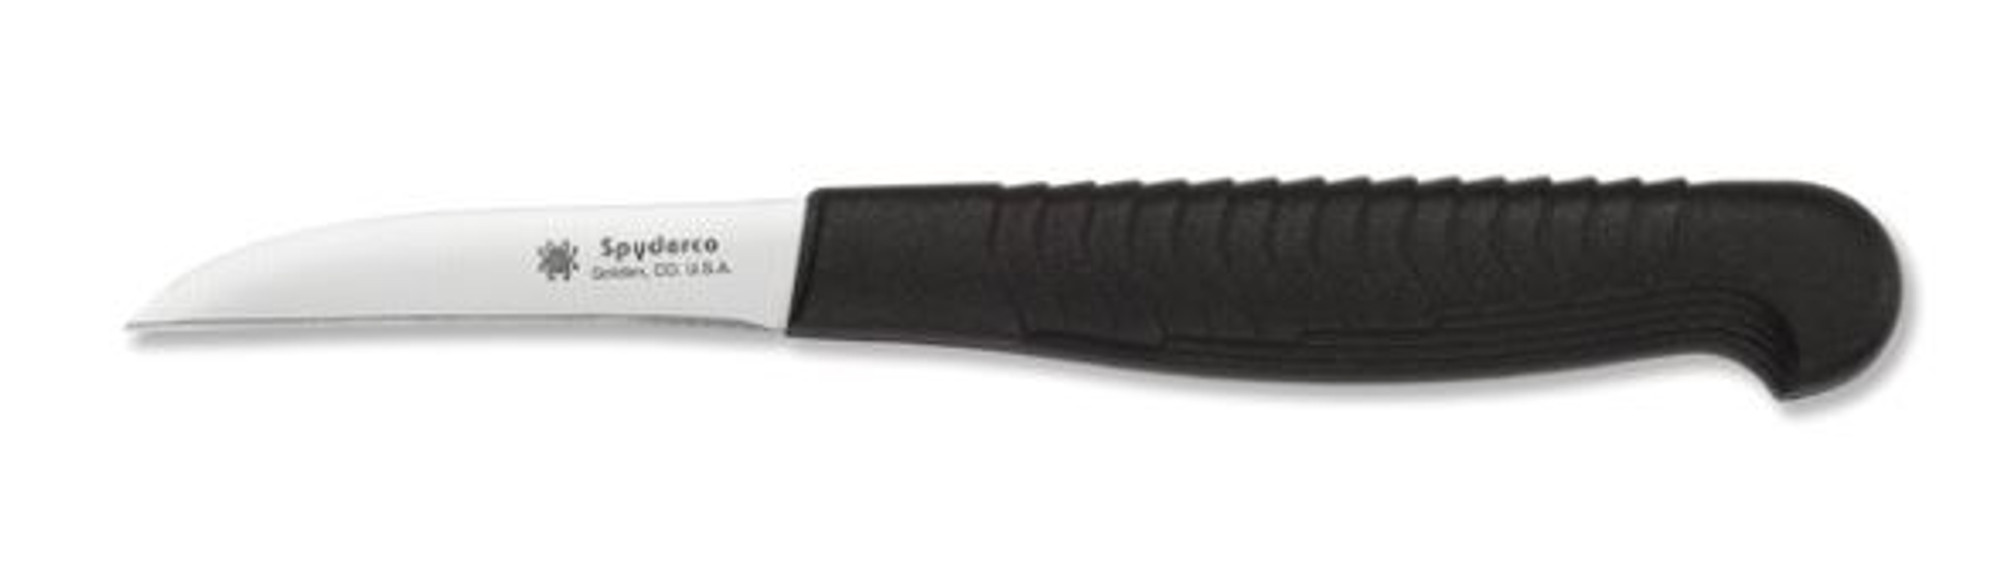 Spyderco K09PBK Mini Paring Knife